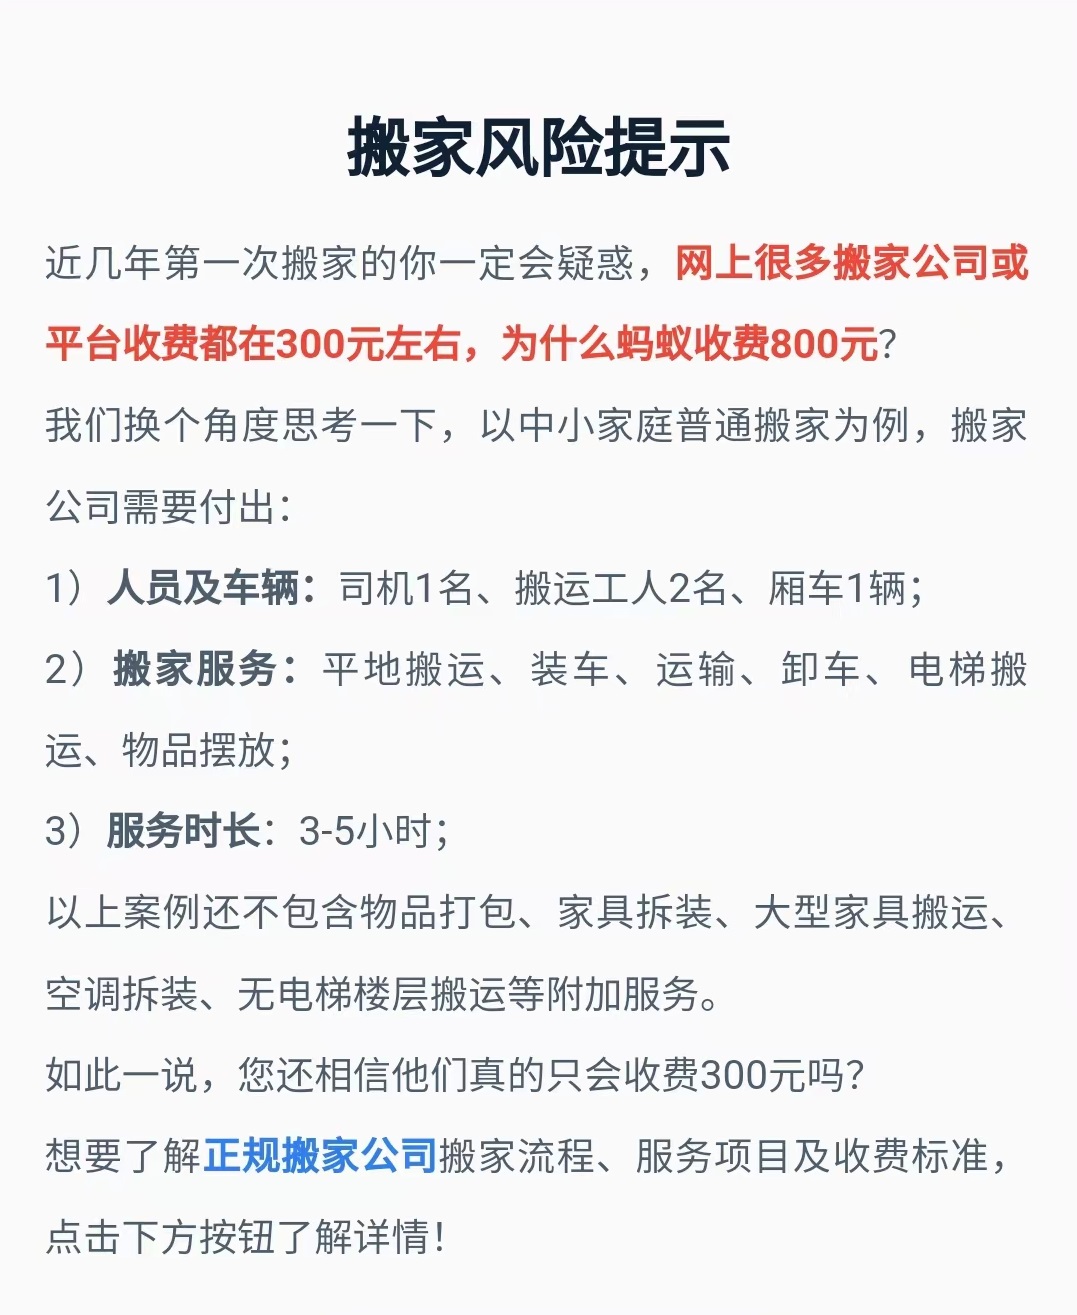 中国银行上海网点电话_上海市正规搬场网点地址电话_上海天天搬场电话